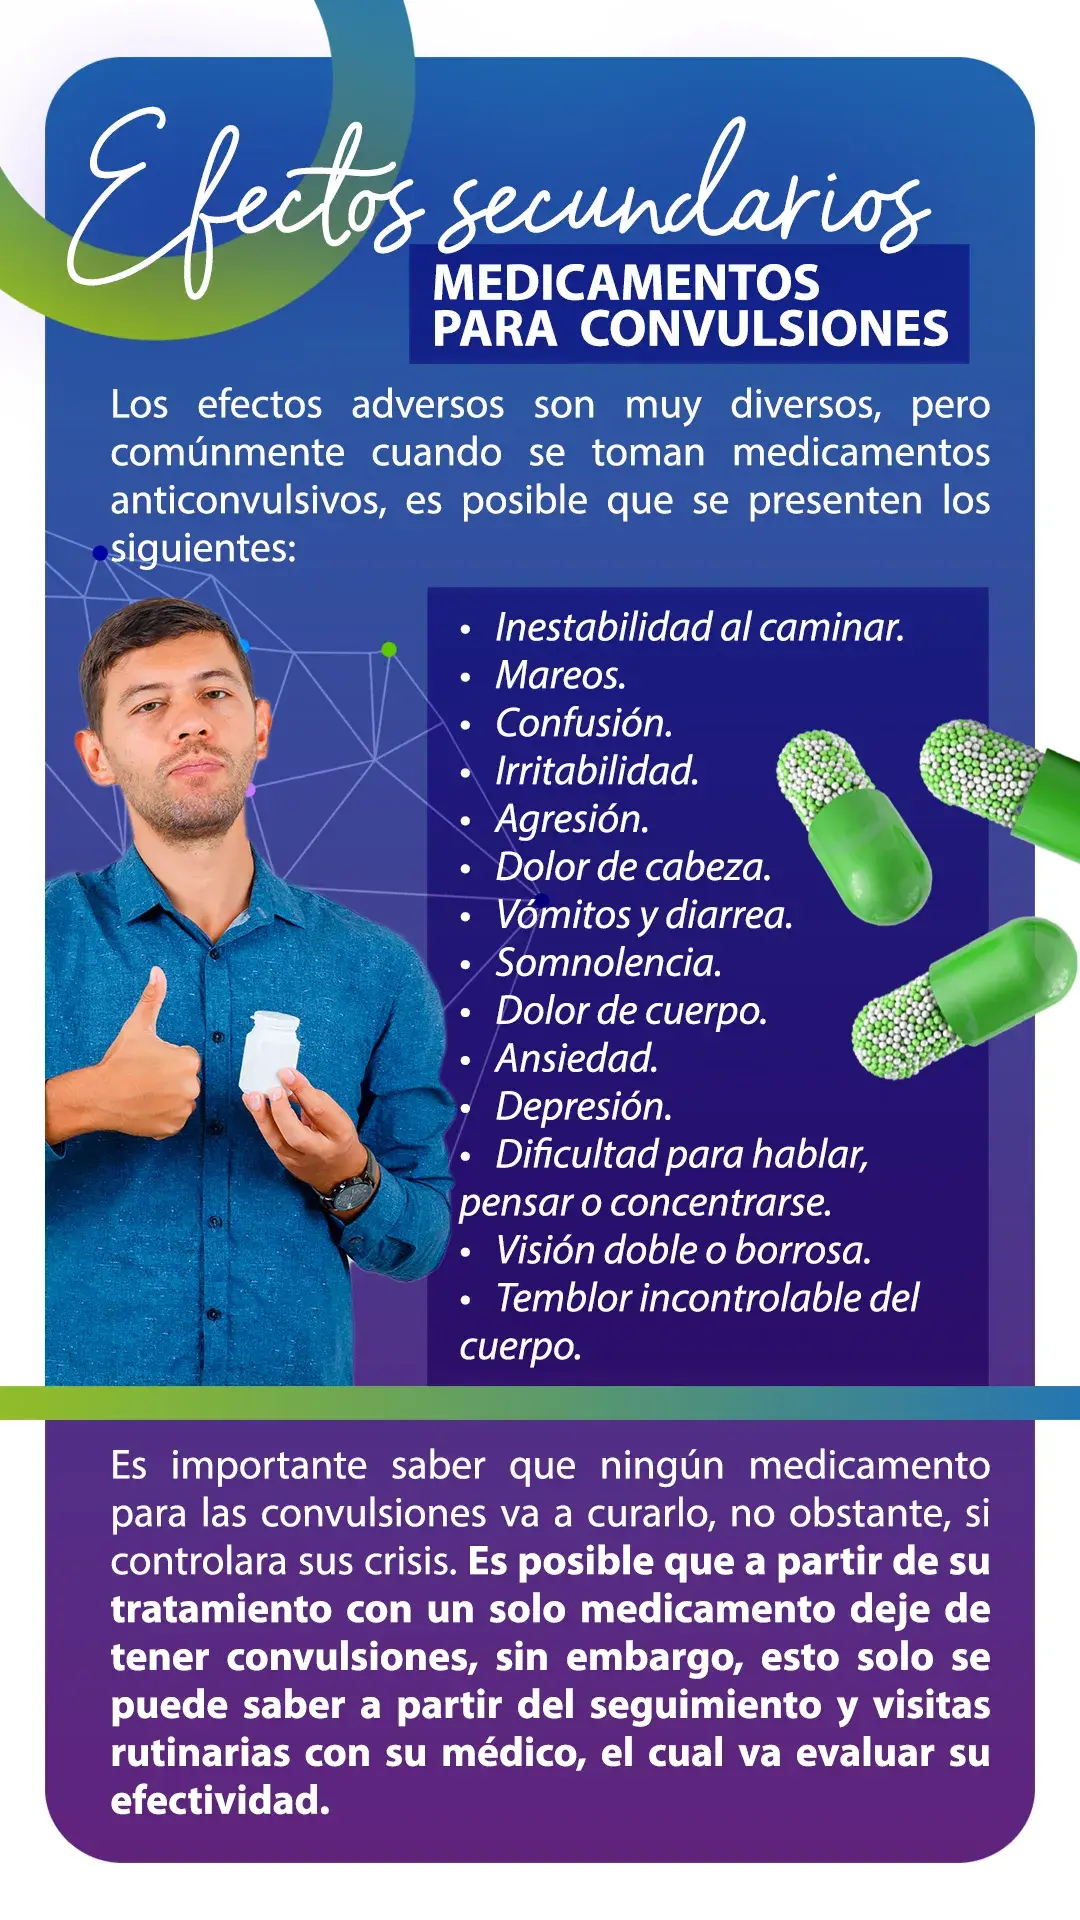 Efectos secundarios de los medicamentos para las convulsiones (inestabilidad, mareos, confusión, agresión, ansiedad, depresión, etc.)